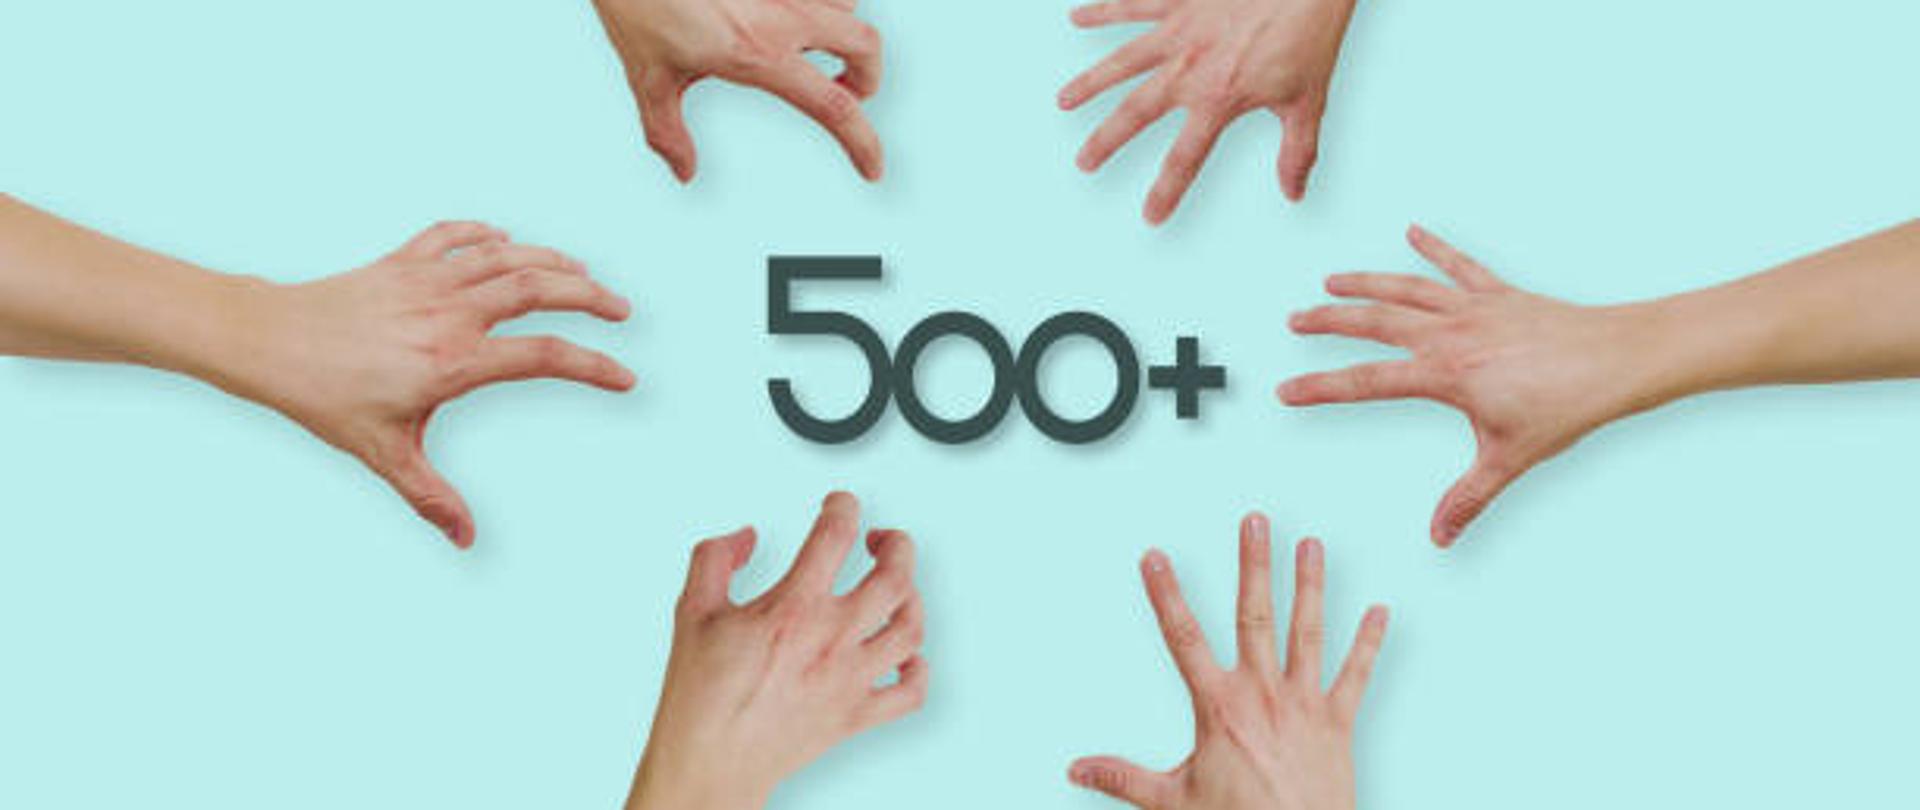 Zdjęcie przedstawia napis "500+", a dookoła są dłonie